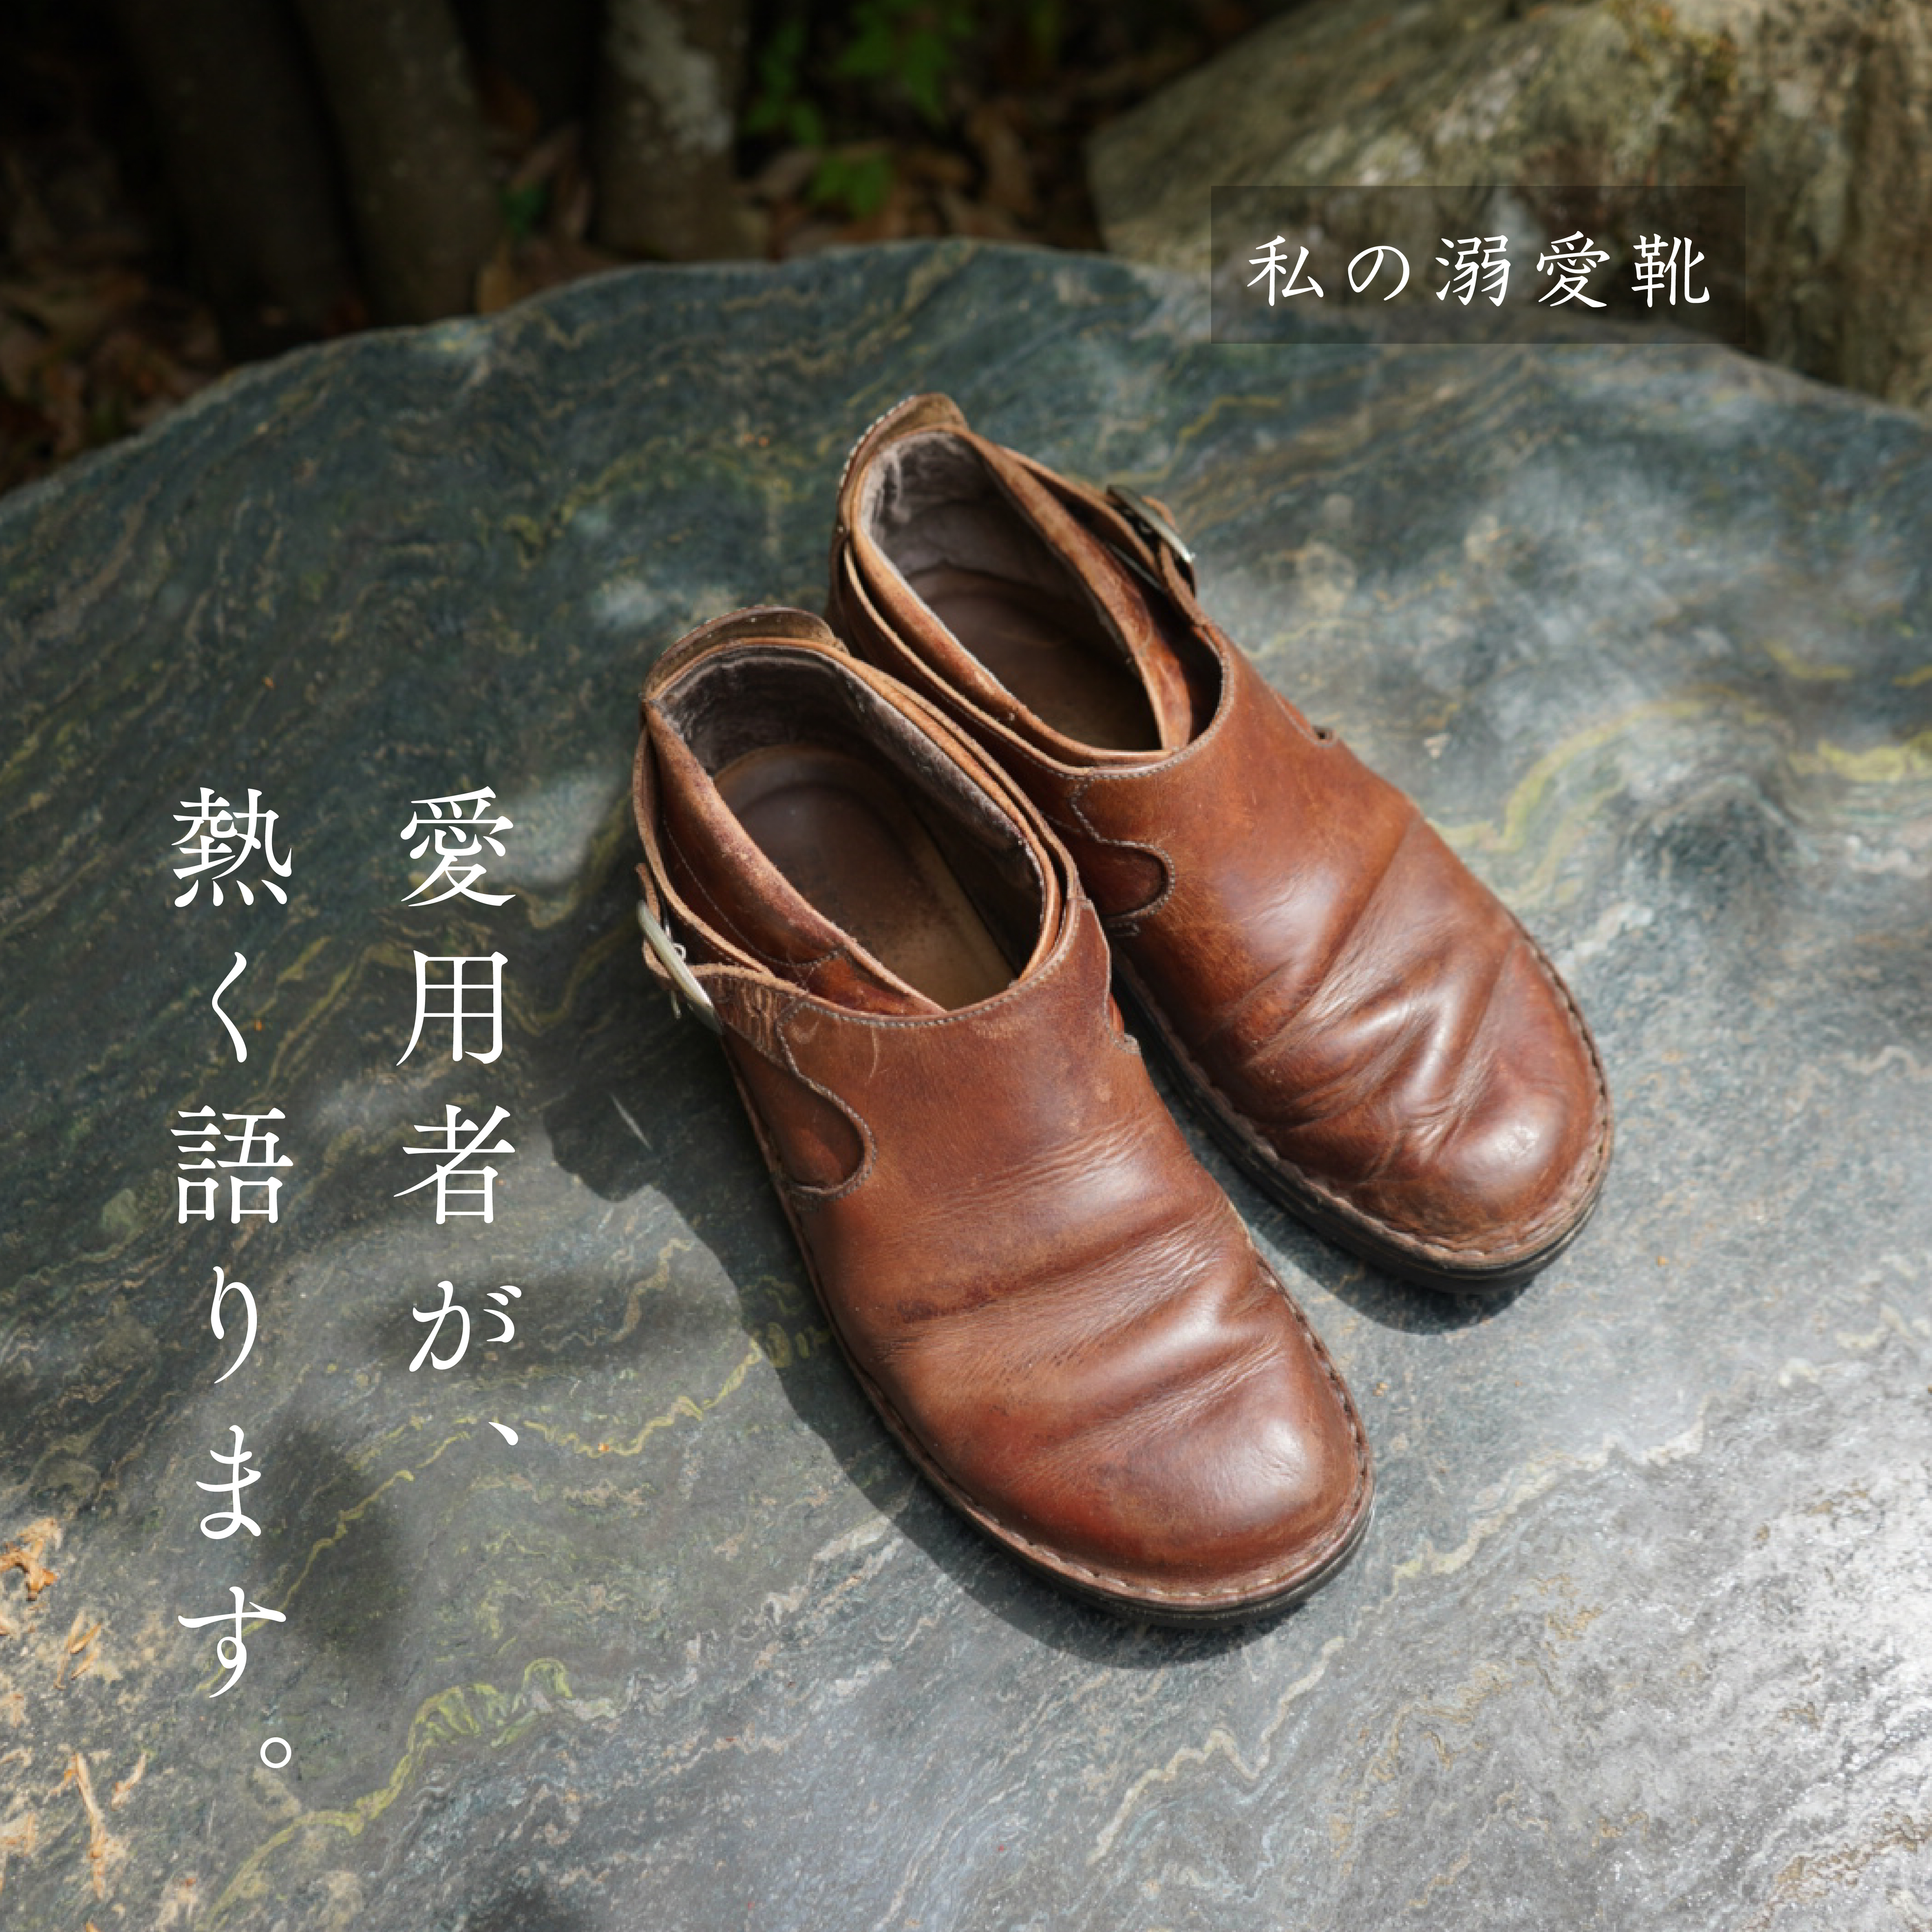 私の溺愛靴 -スタッフ奥口のMALTA編- | NAOT ナオトジャパン